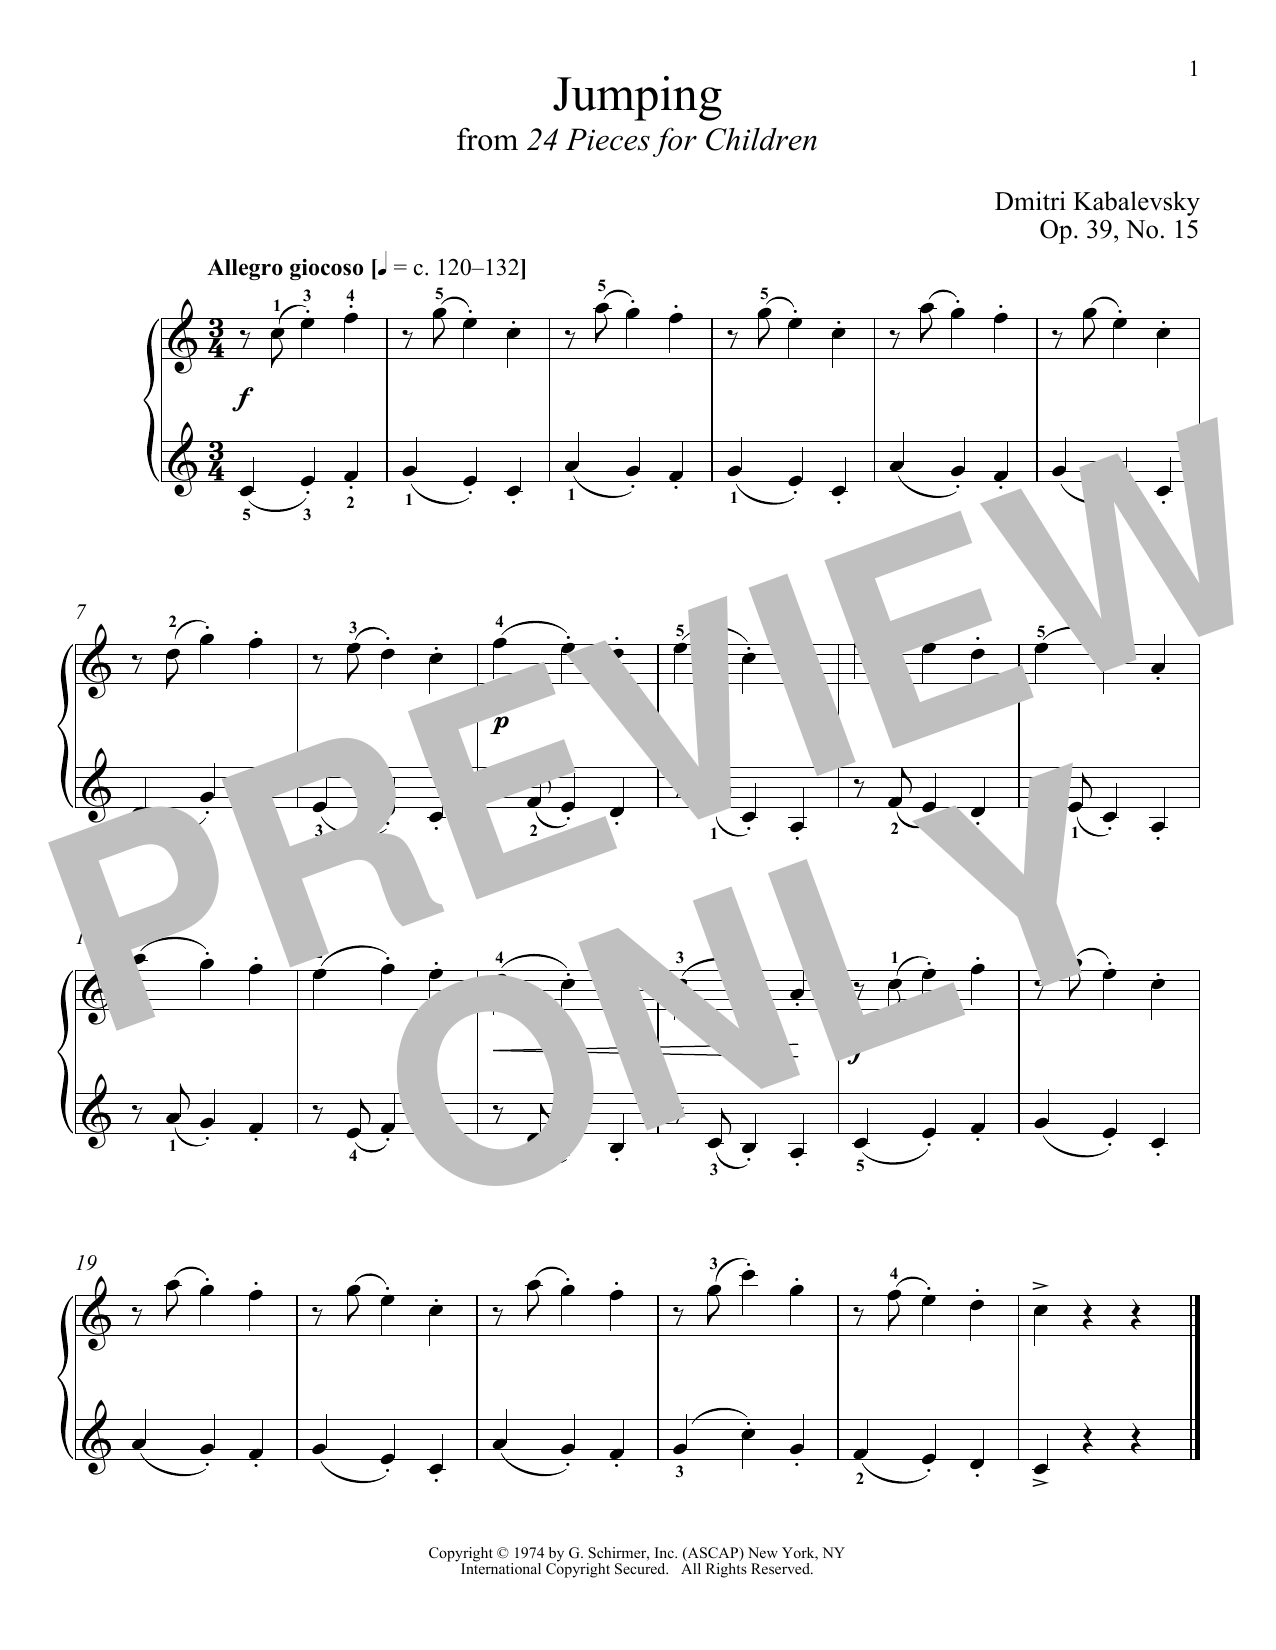 Download Dmitri Kabalevsky Jumping, Op. 39, No. 15 Sheet Music